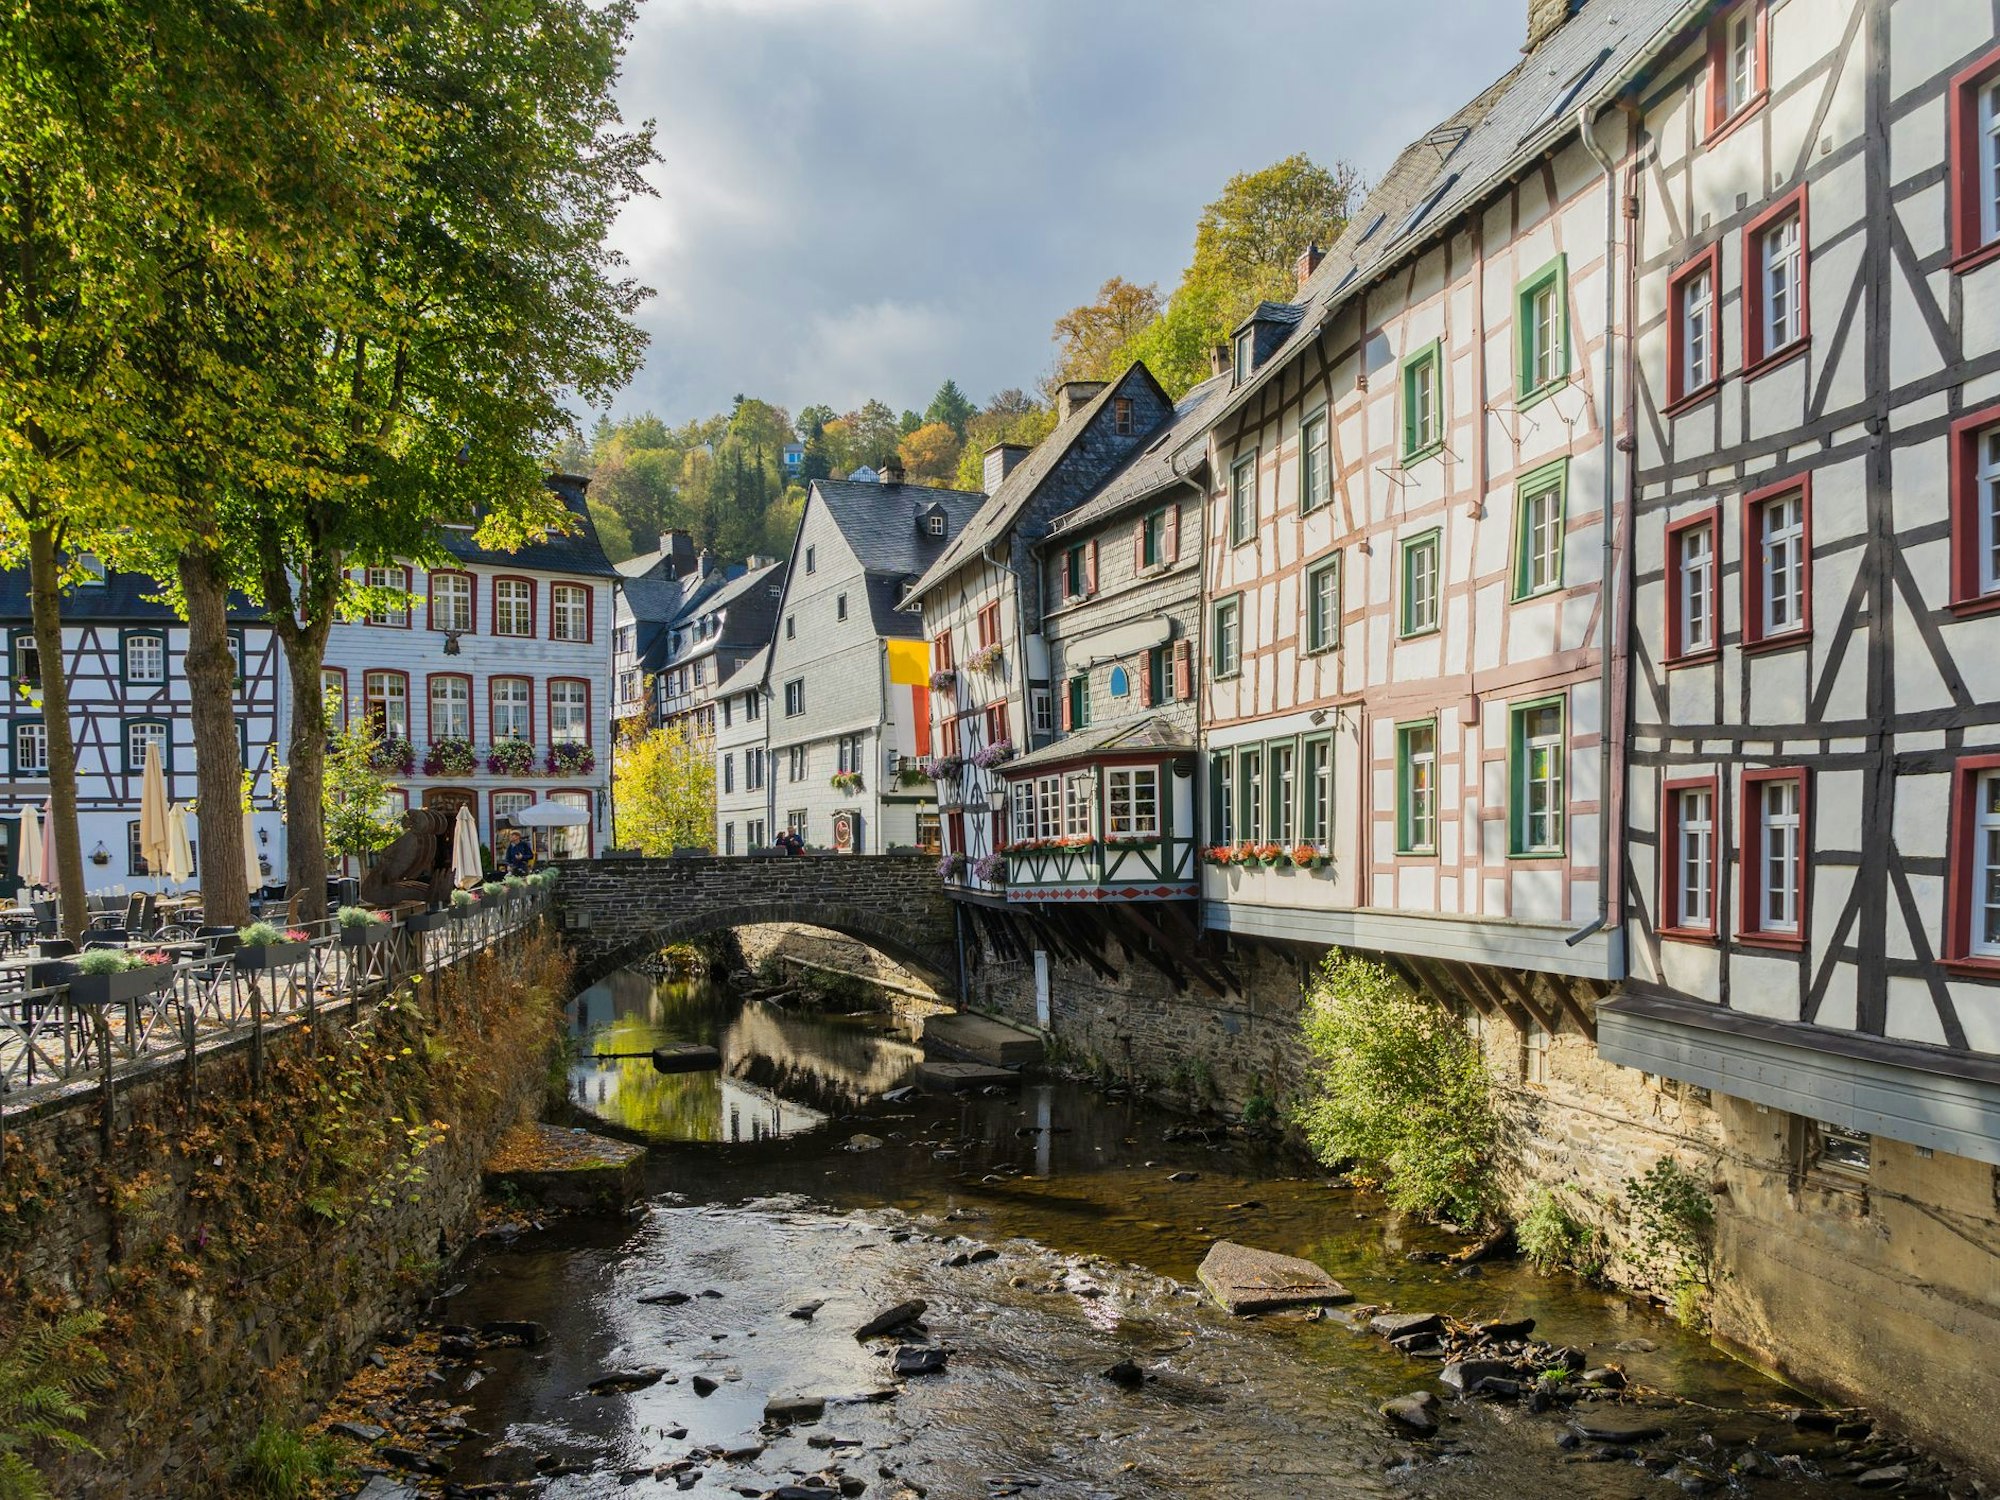 Monschau und Monreal gehören ohne Frage zu den schönsten Städten der Eifel.